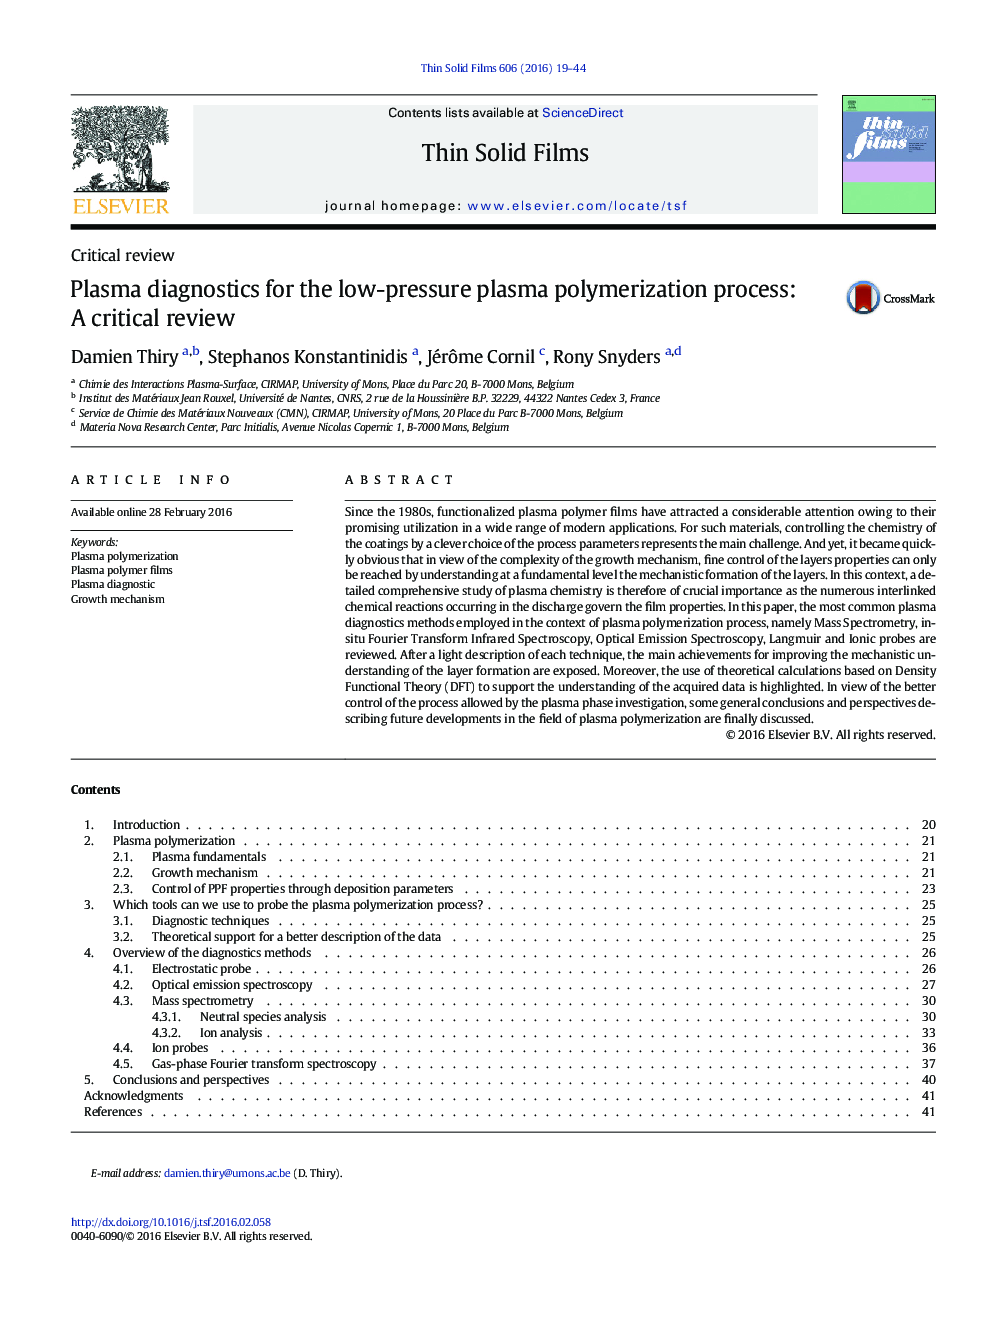 تشخیص پلاسما برای پلیمریزاسیون پلاسمای کم فشار: بررسی انتقادی 